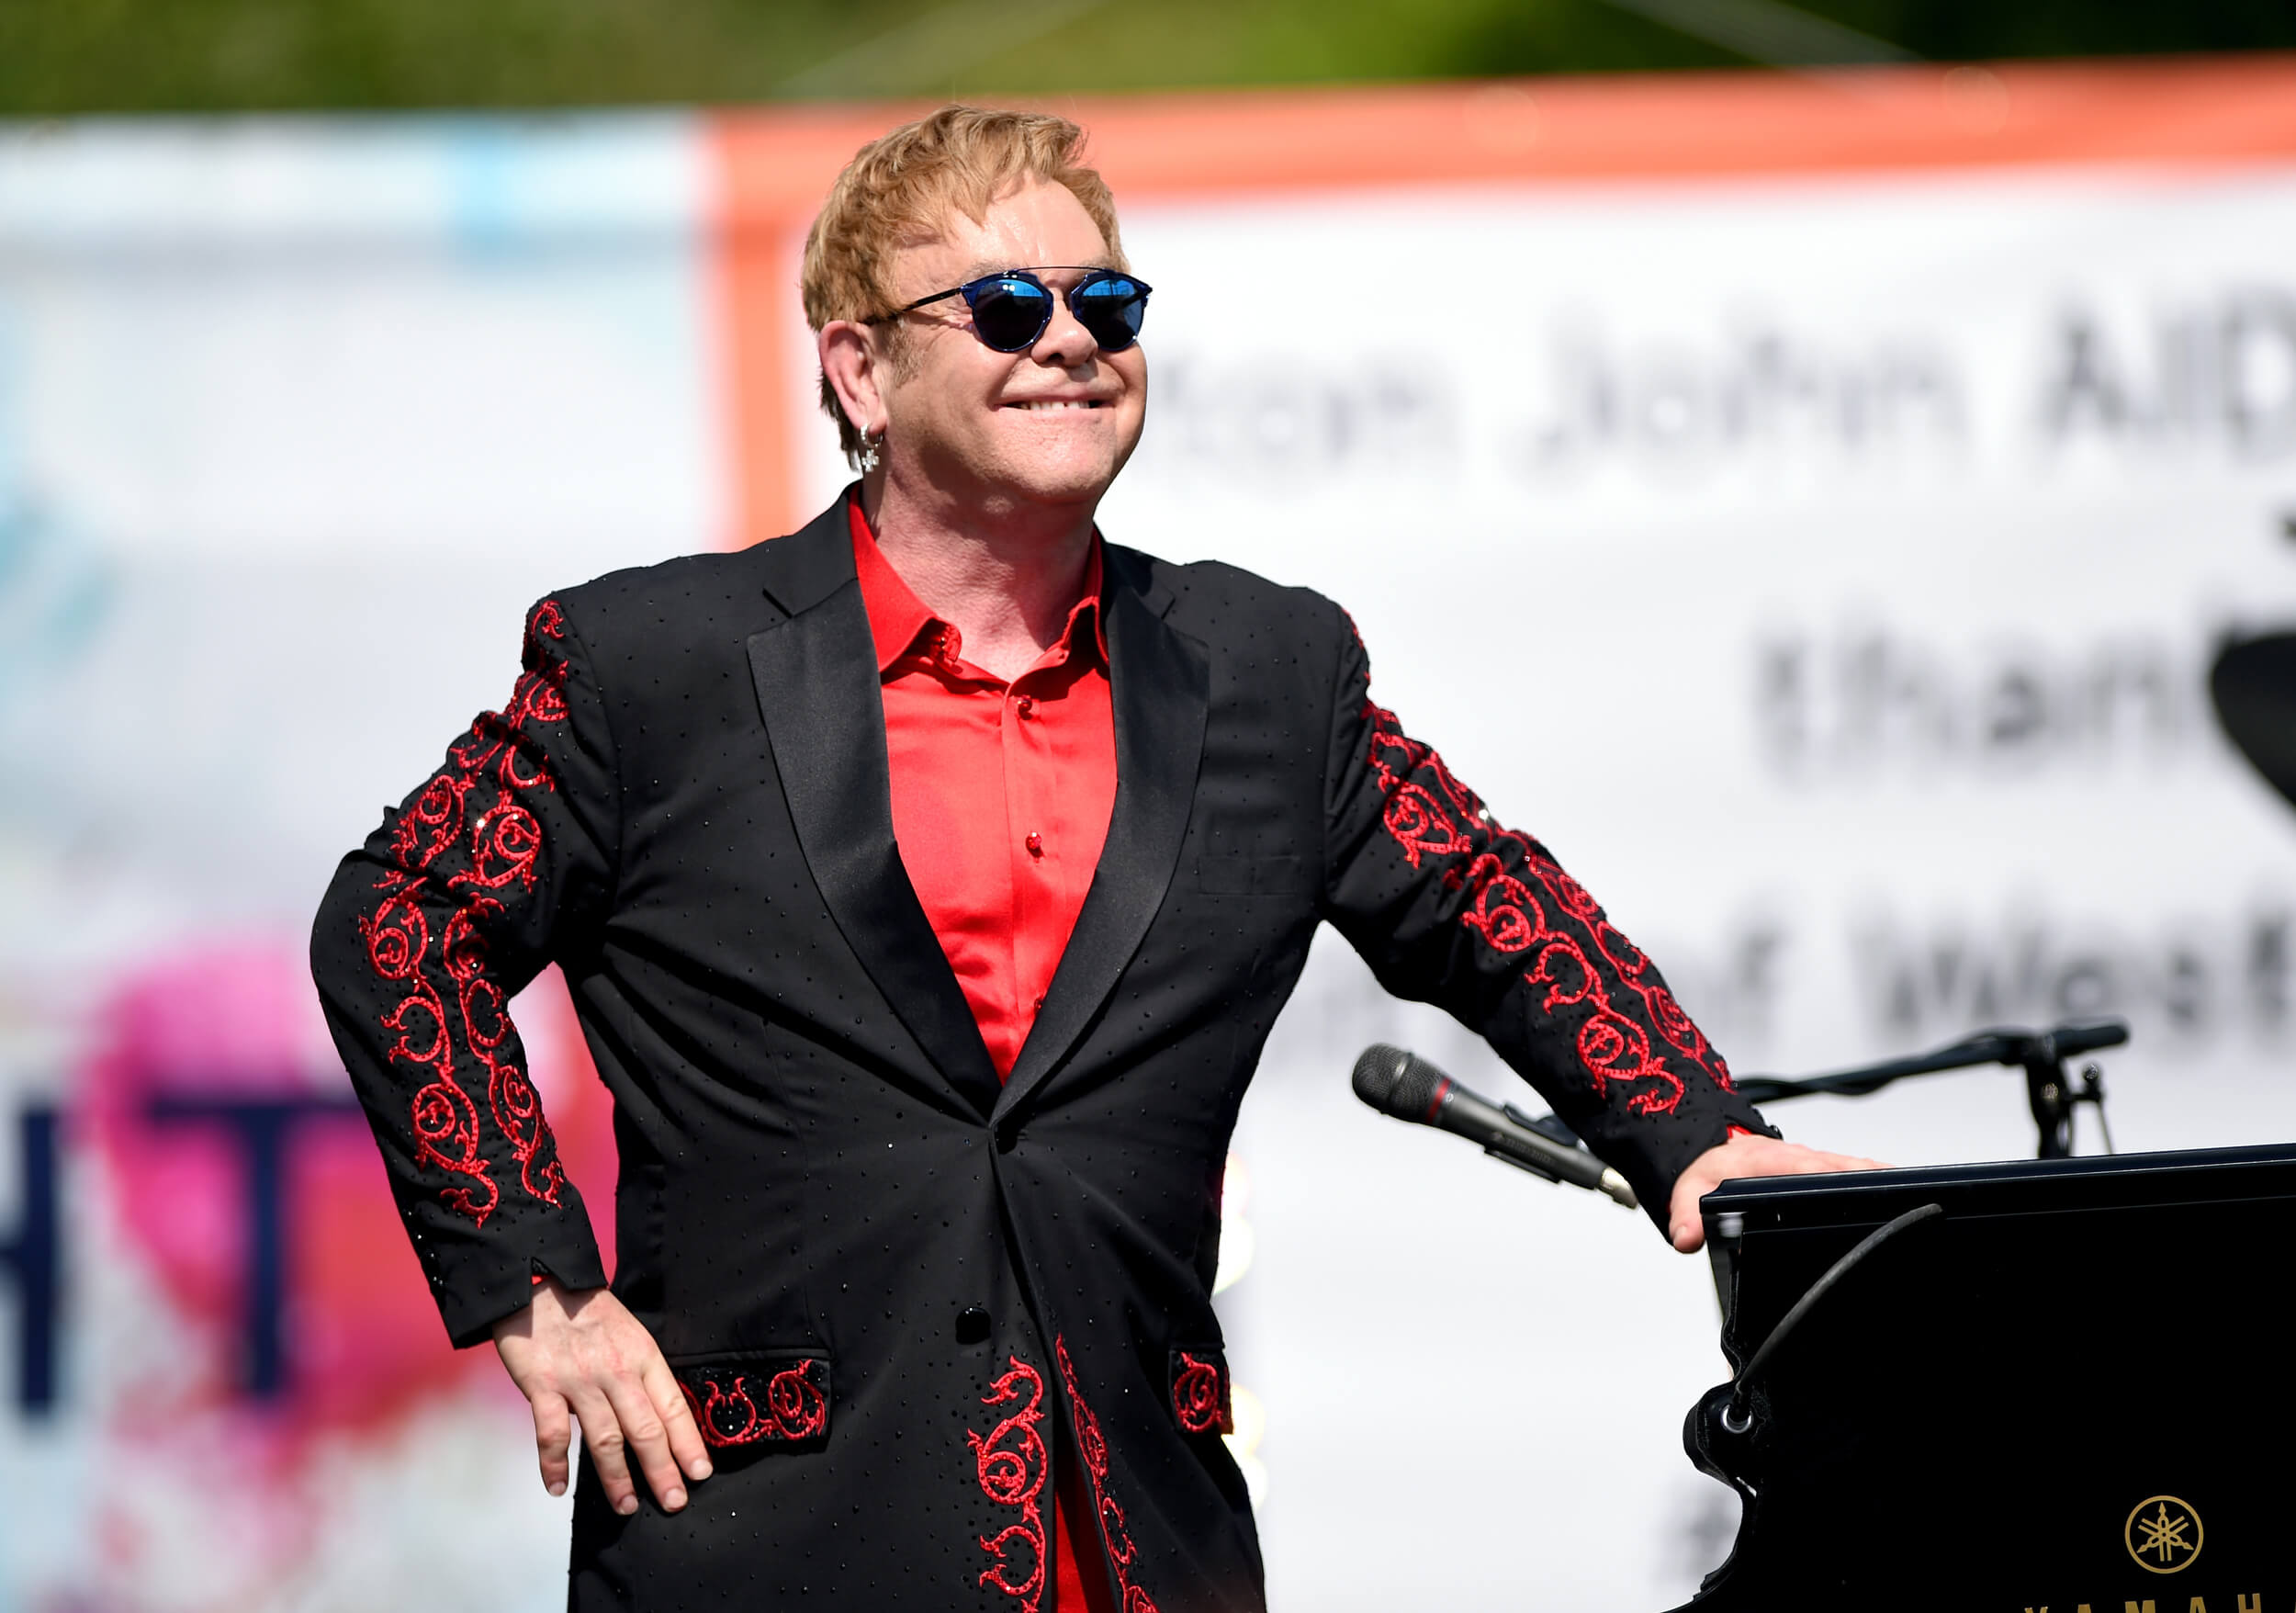 Elton John Biography • Sir Elton Hercules John CBE • British Musician